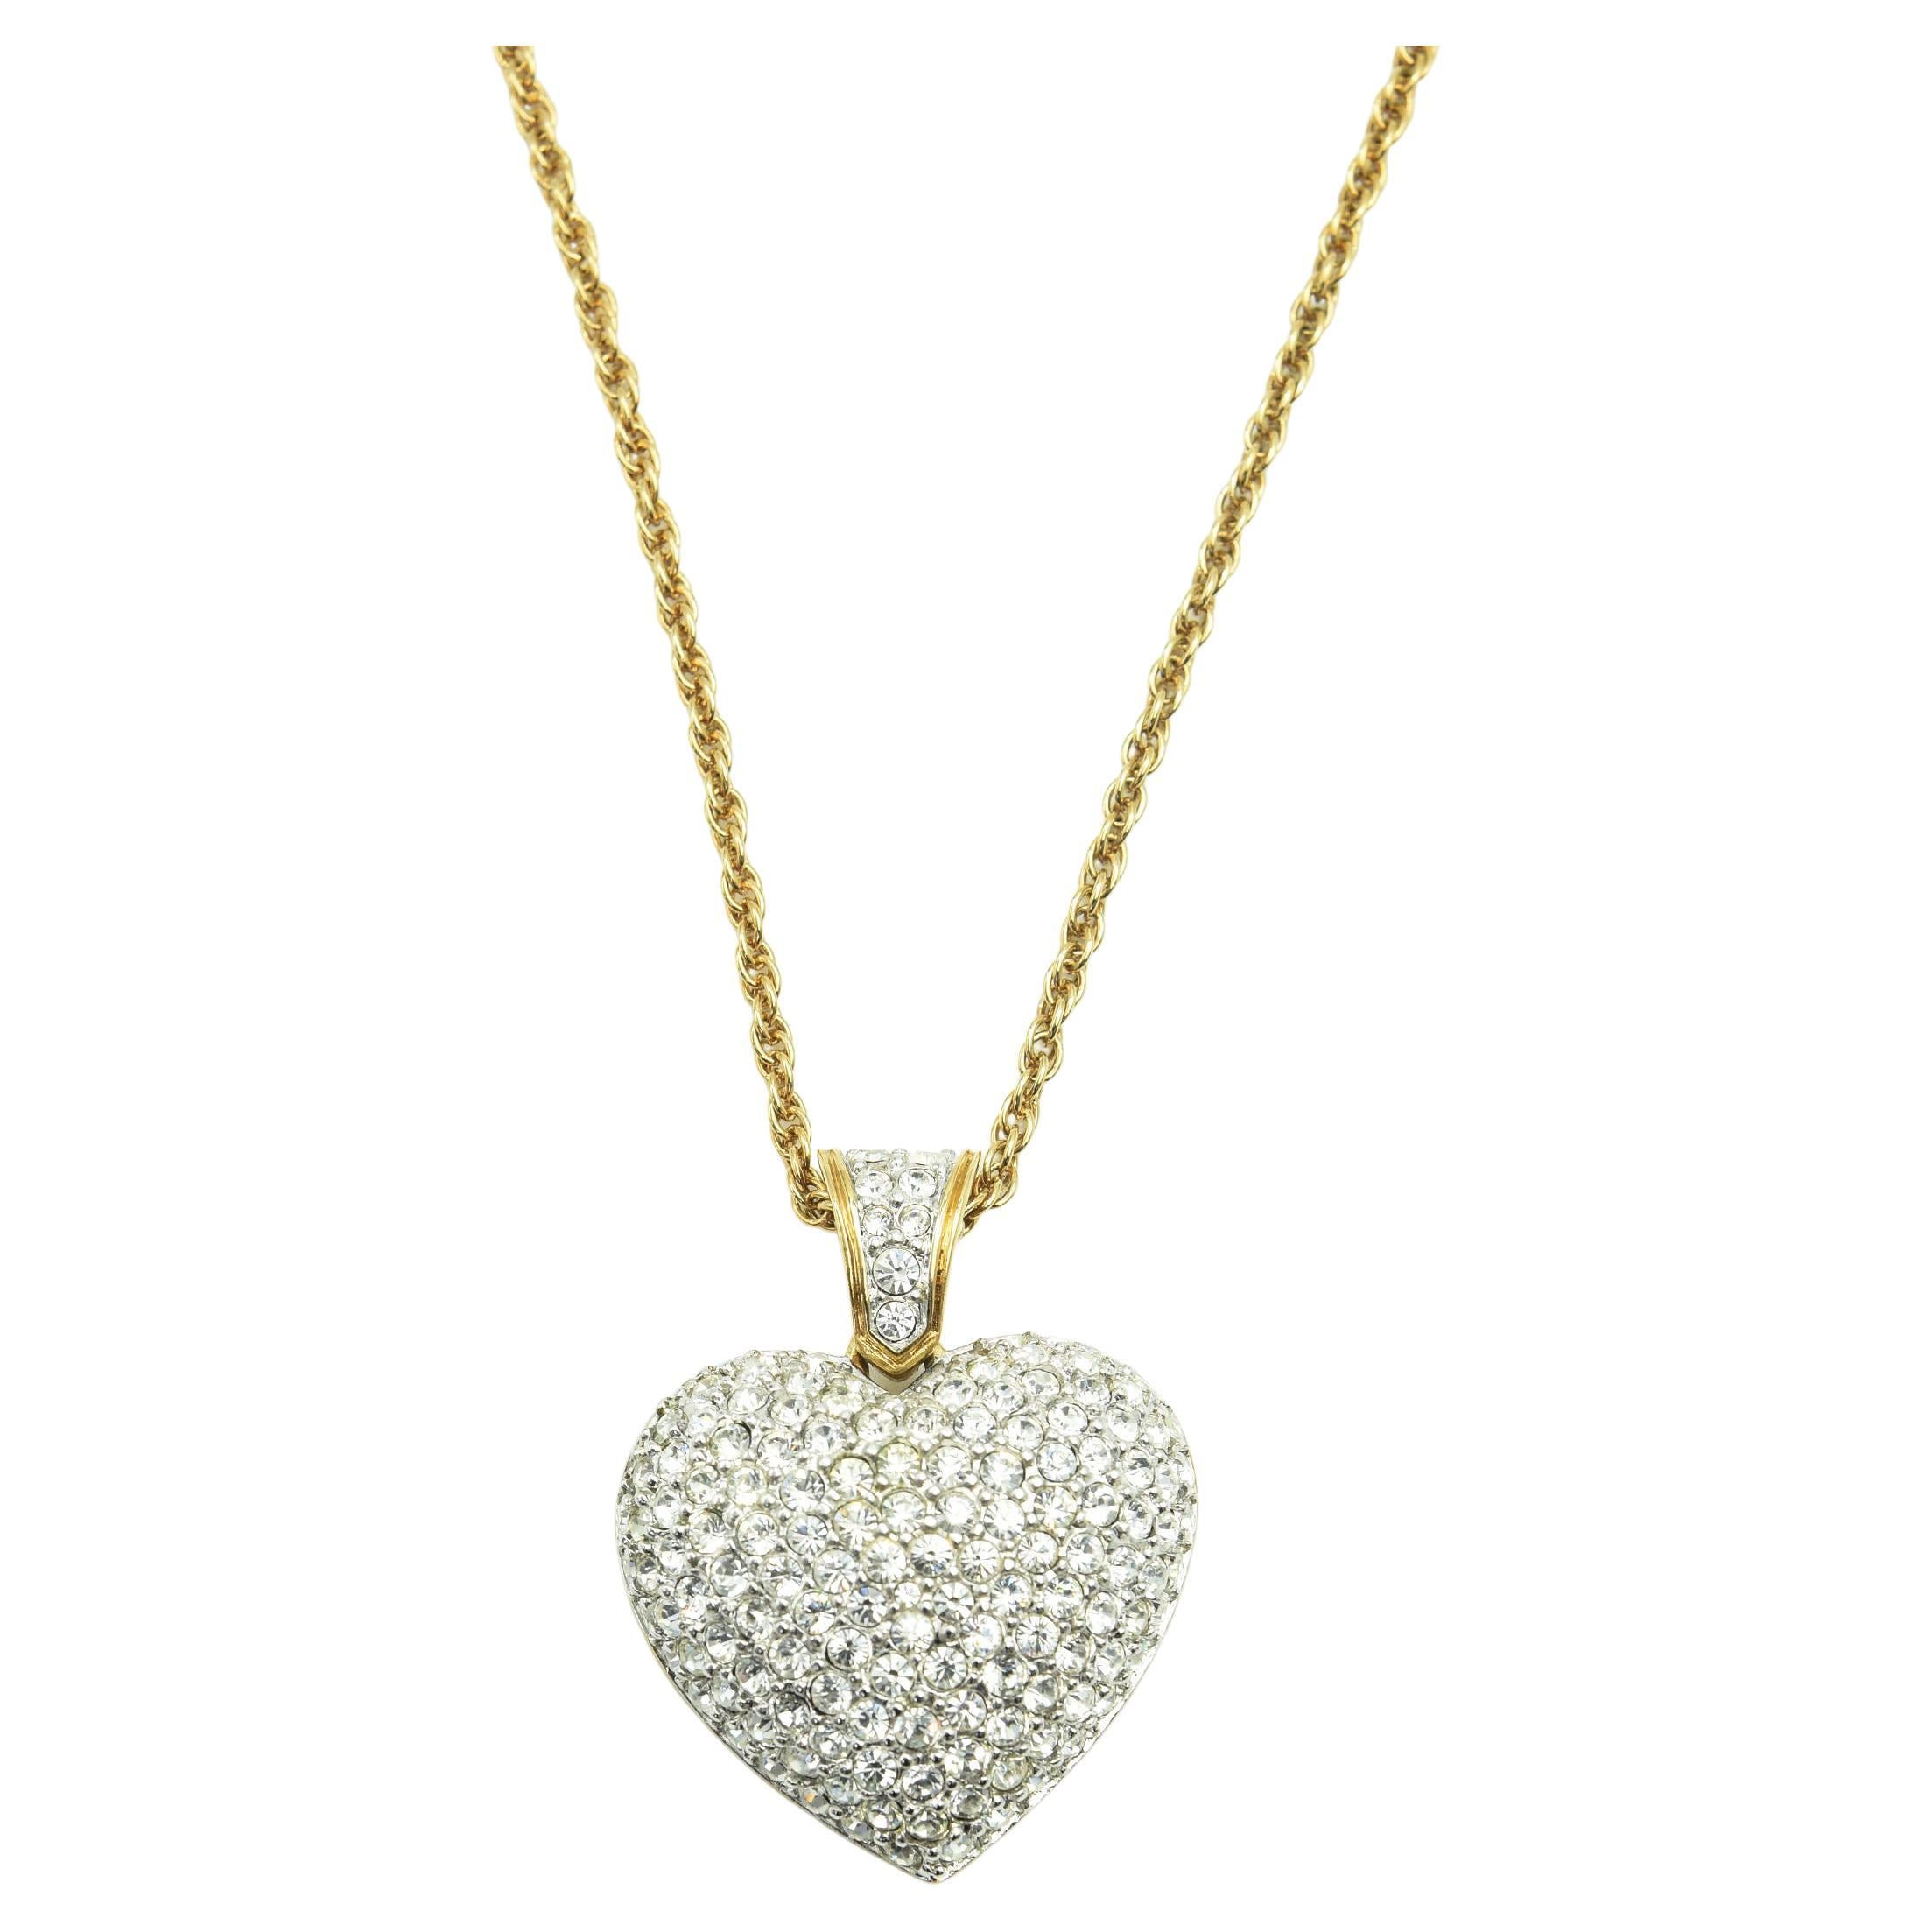 Großer Swarovski Pavé Kristall Puffy Heart Anhänger Halskette - Signiert im Angebot